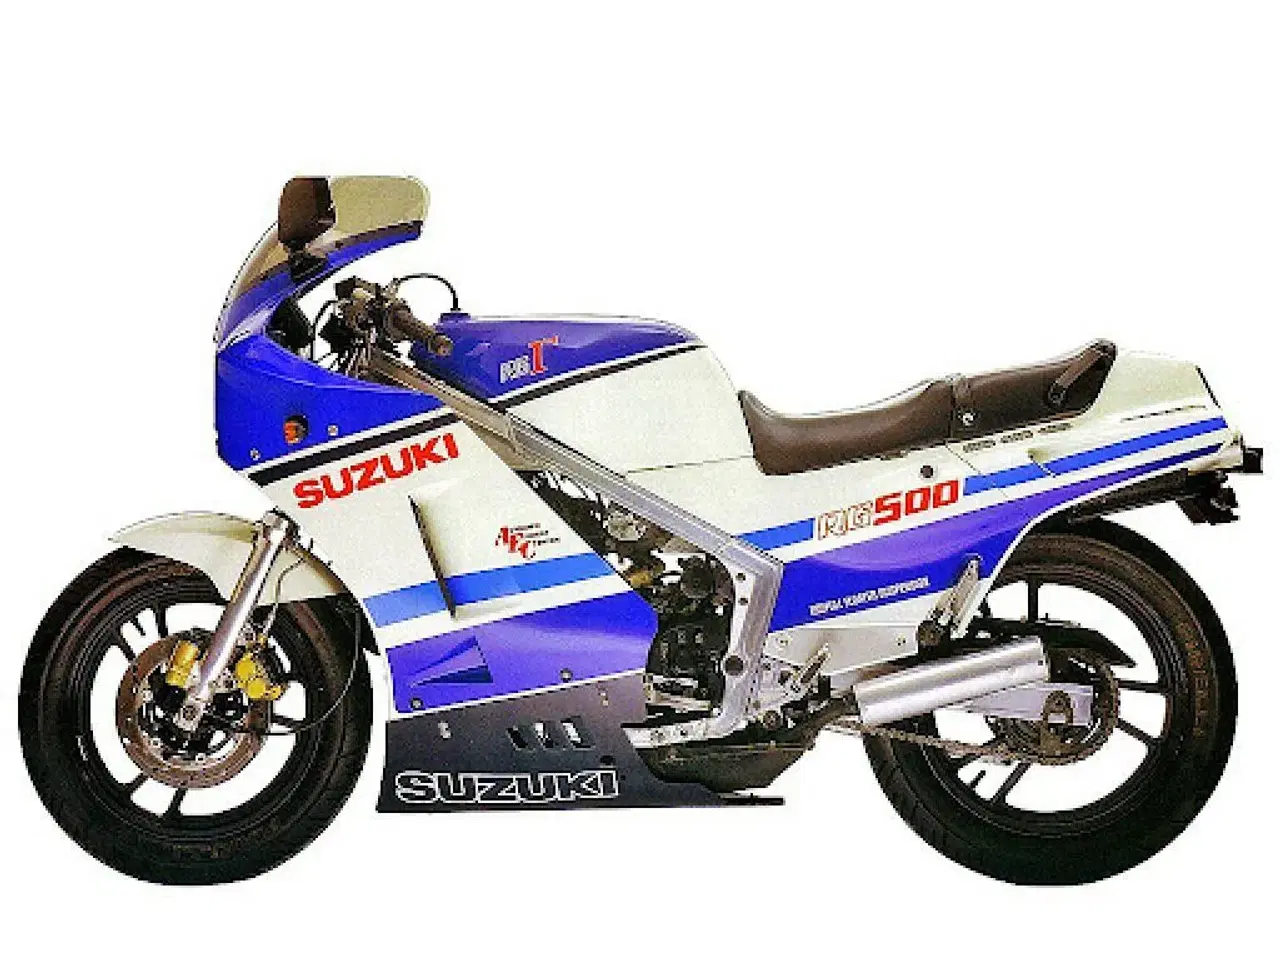 Billede 1 - Suzuki RG 500 købes